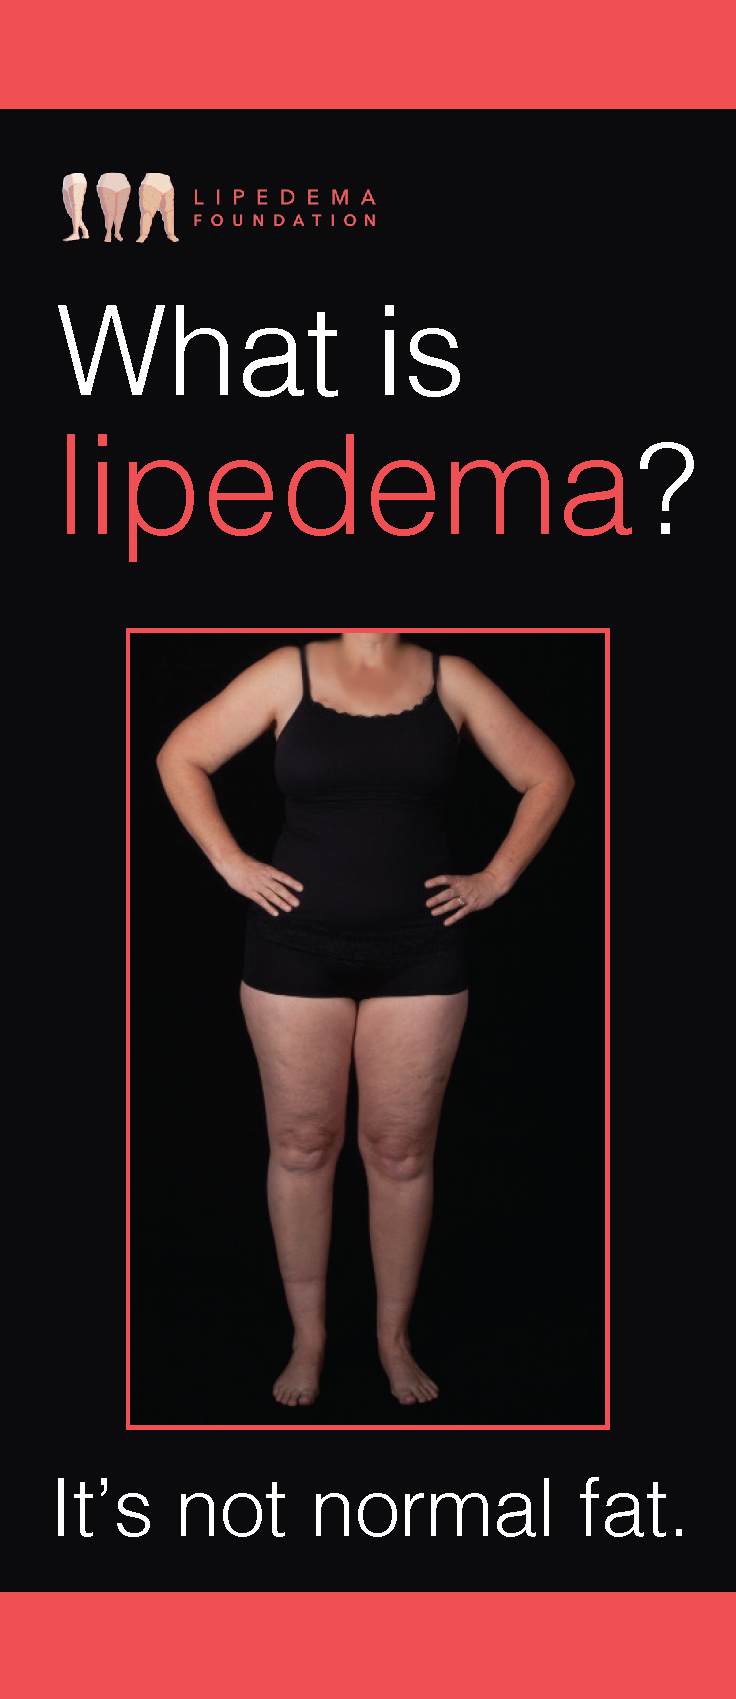 Lipedema (also known as Lipoedema or Lipodema) is a pernicious